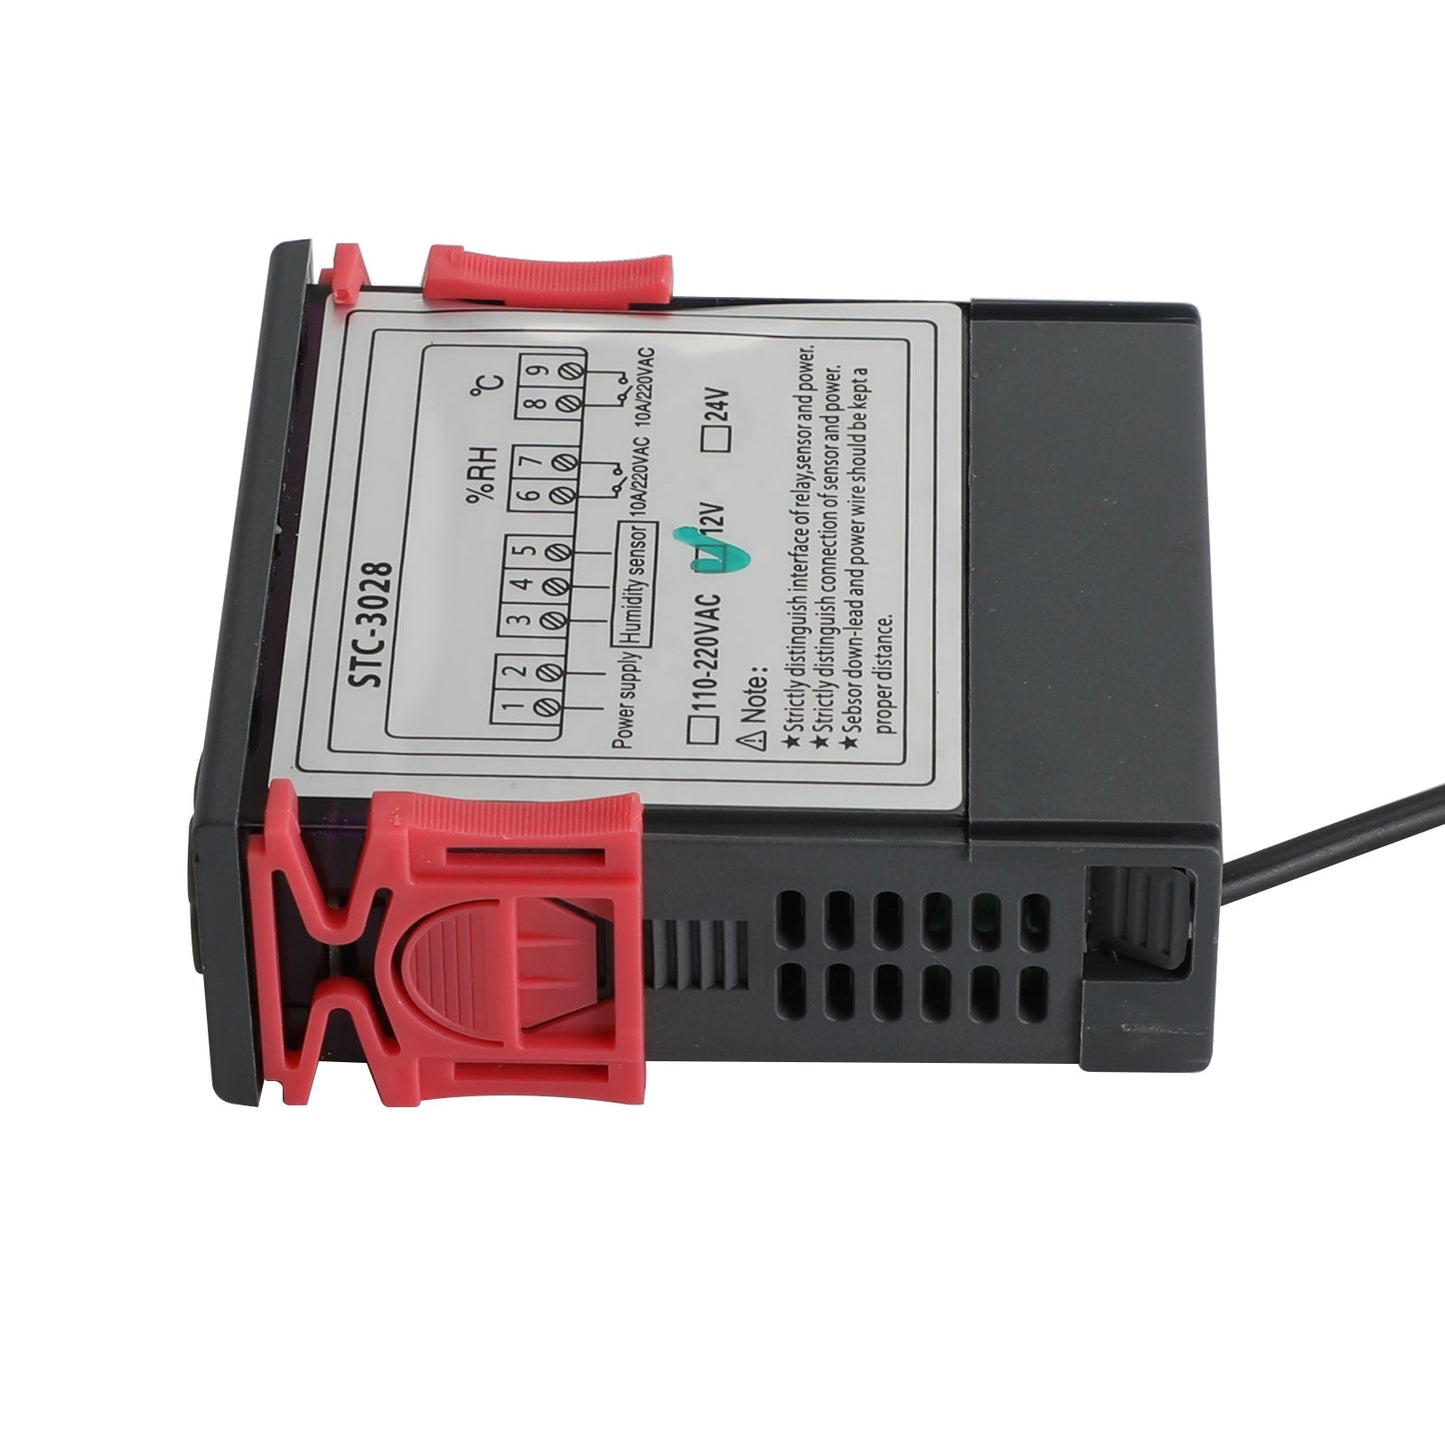 STC-3028 Digitaler Temperatur- und Luftfeuchtigkeitsregler mit zwei Displays, Thermostat + Sonde